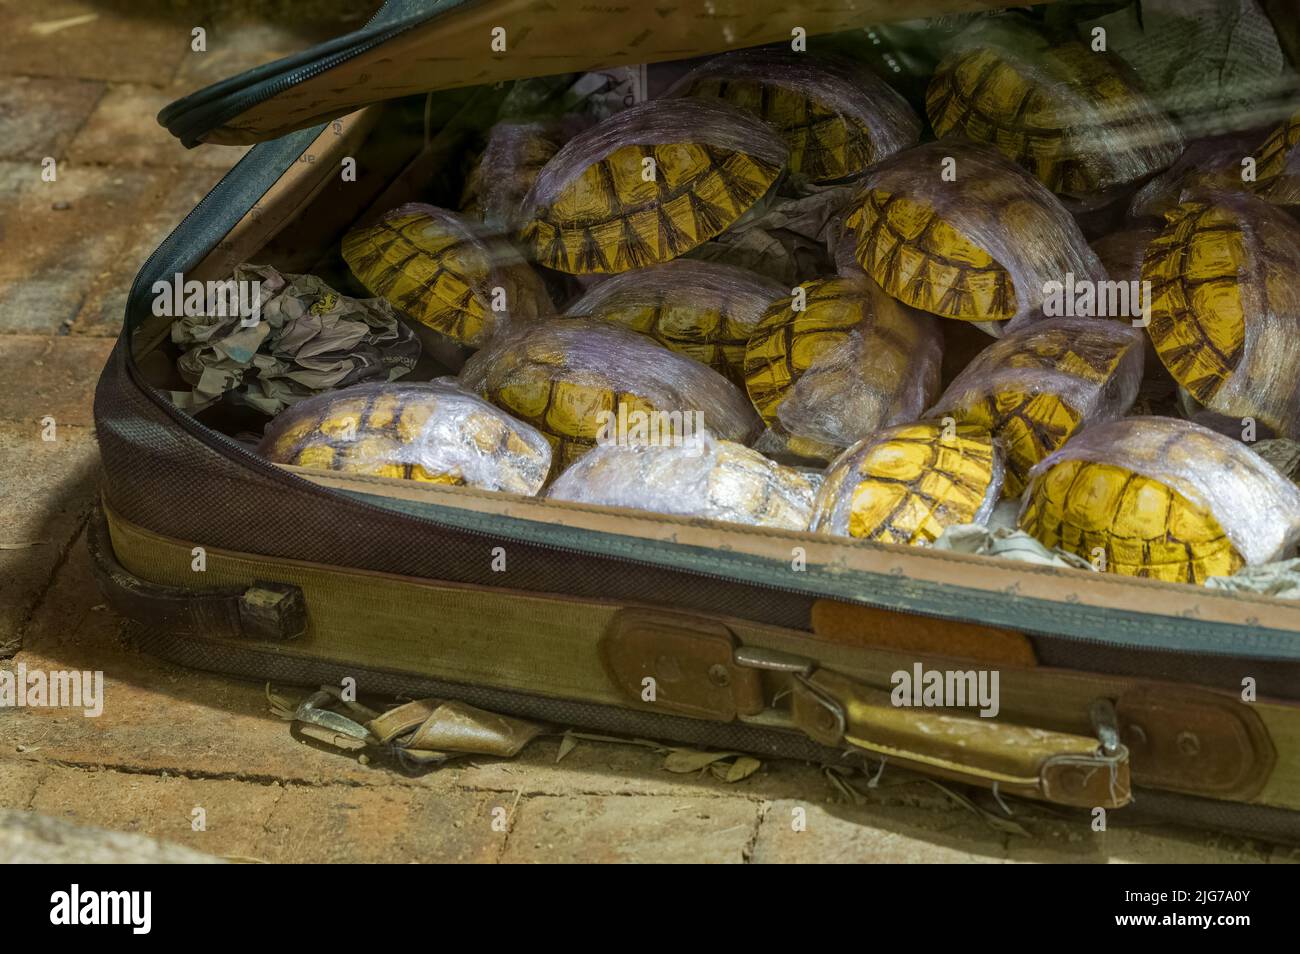 Una maleta maltratada llena de caracoles de tortuga sacada del país de contrabando. Concepto de contrabando de animales. Foto de stock